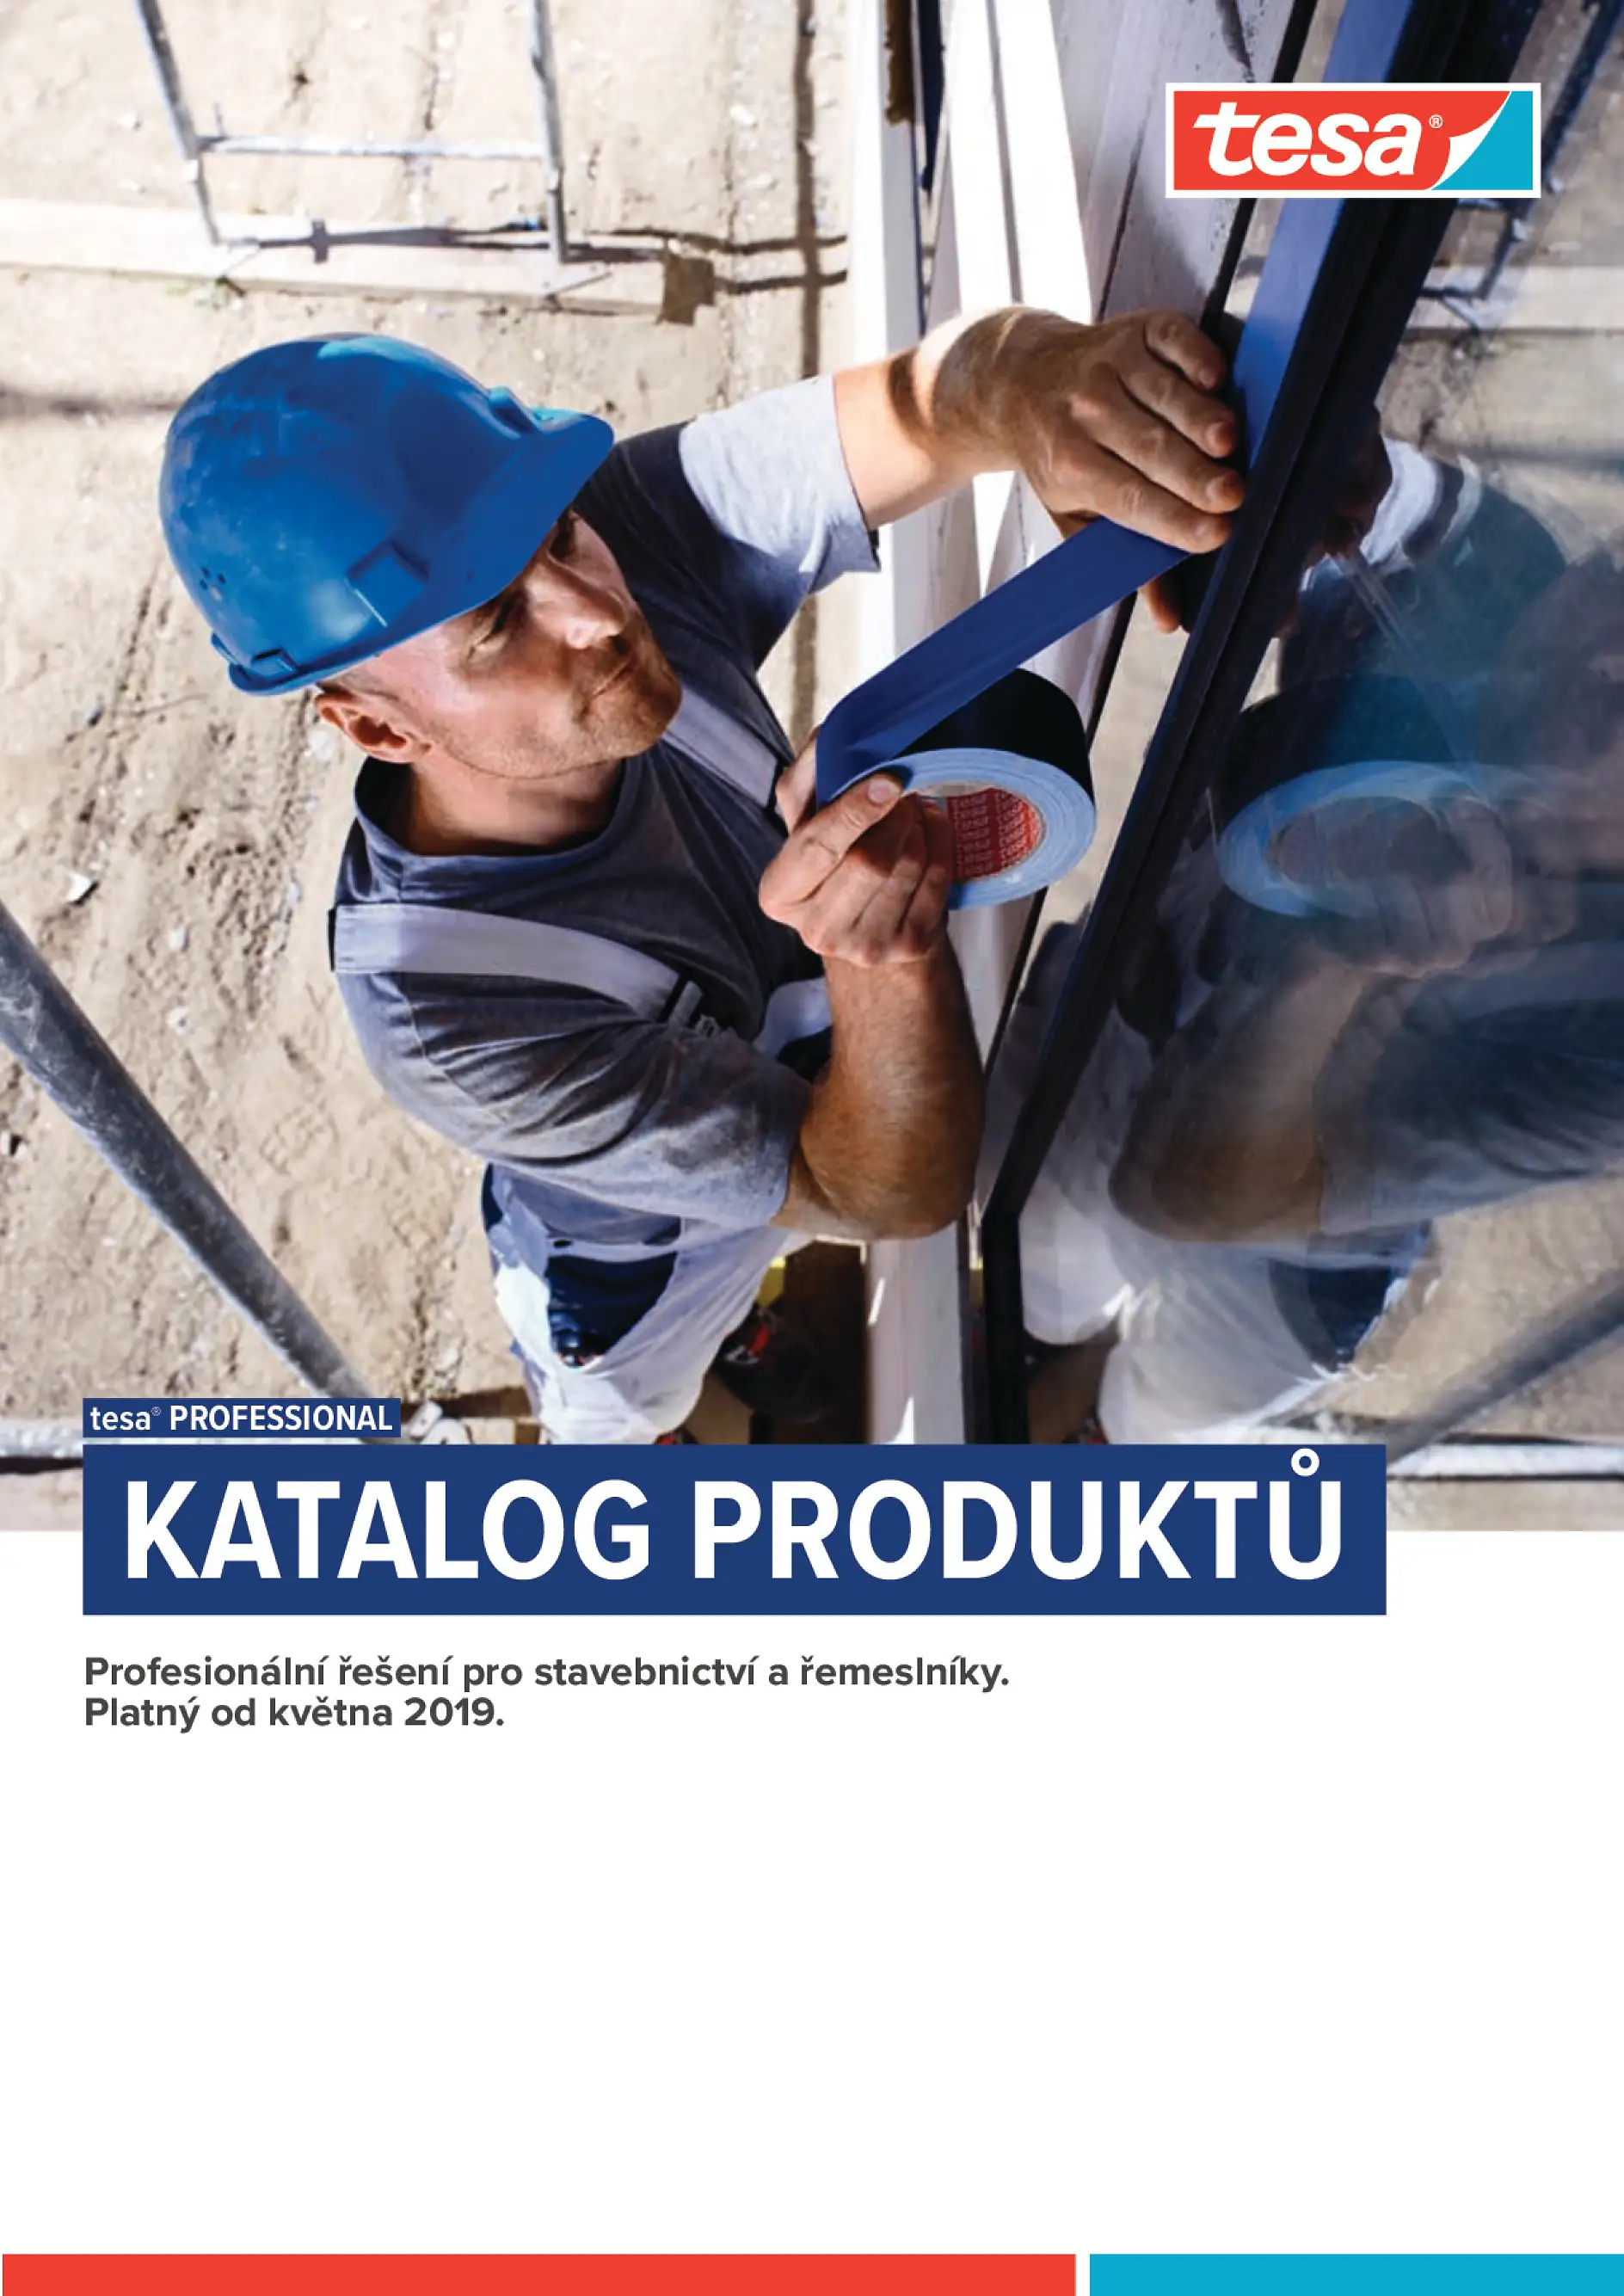 Katalog pásek a doplňků pro stavebnictví a řemeslníky. Platný od 5/2019.